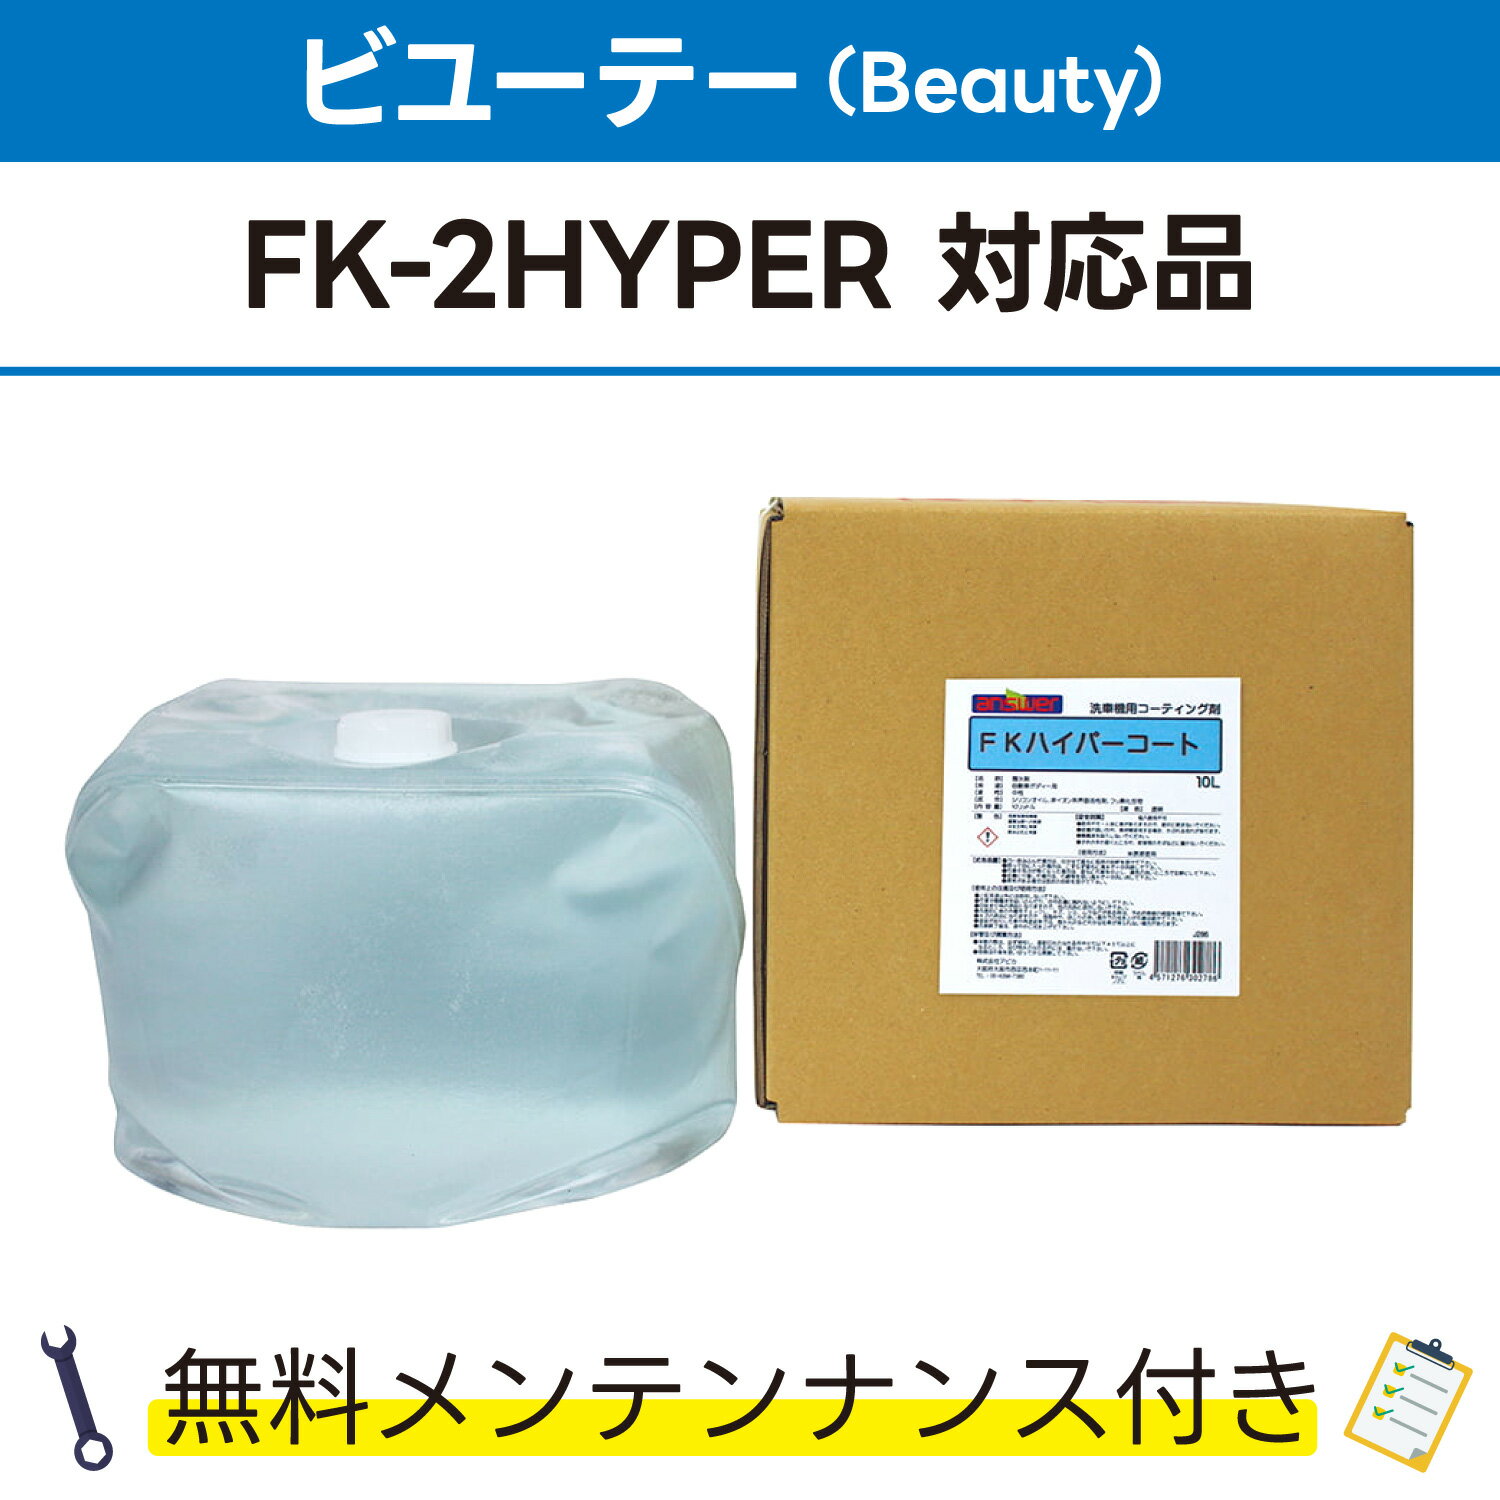 FKハイパーコート 10L×1ビユーテー(Beauty) FK-2HYPER対応品 無料メンテナンス付 ビューティ ビューテー 洗車機用 溶剤 洗剤 メンテナンスパック 門型 定期点検 配管詰まり